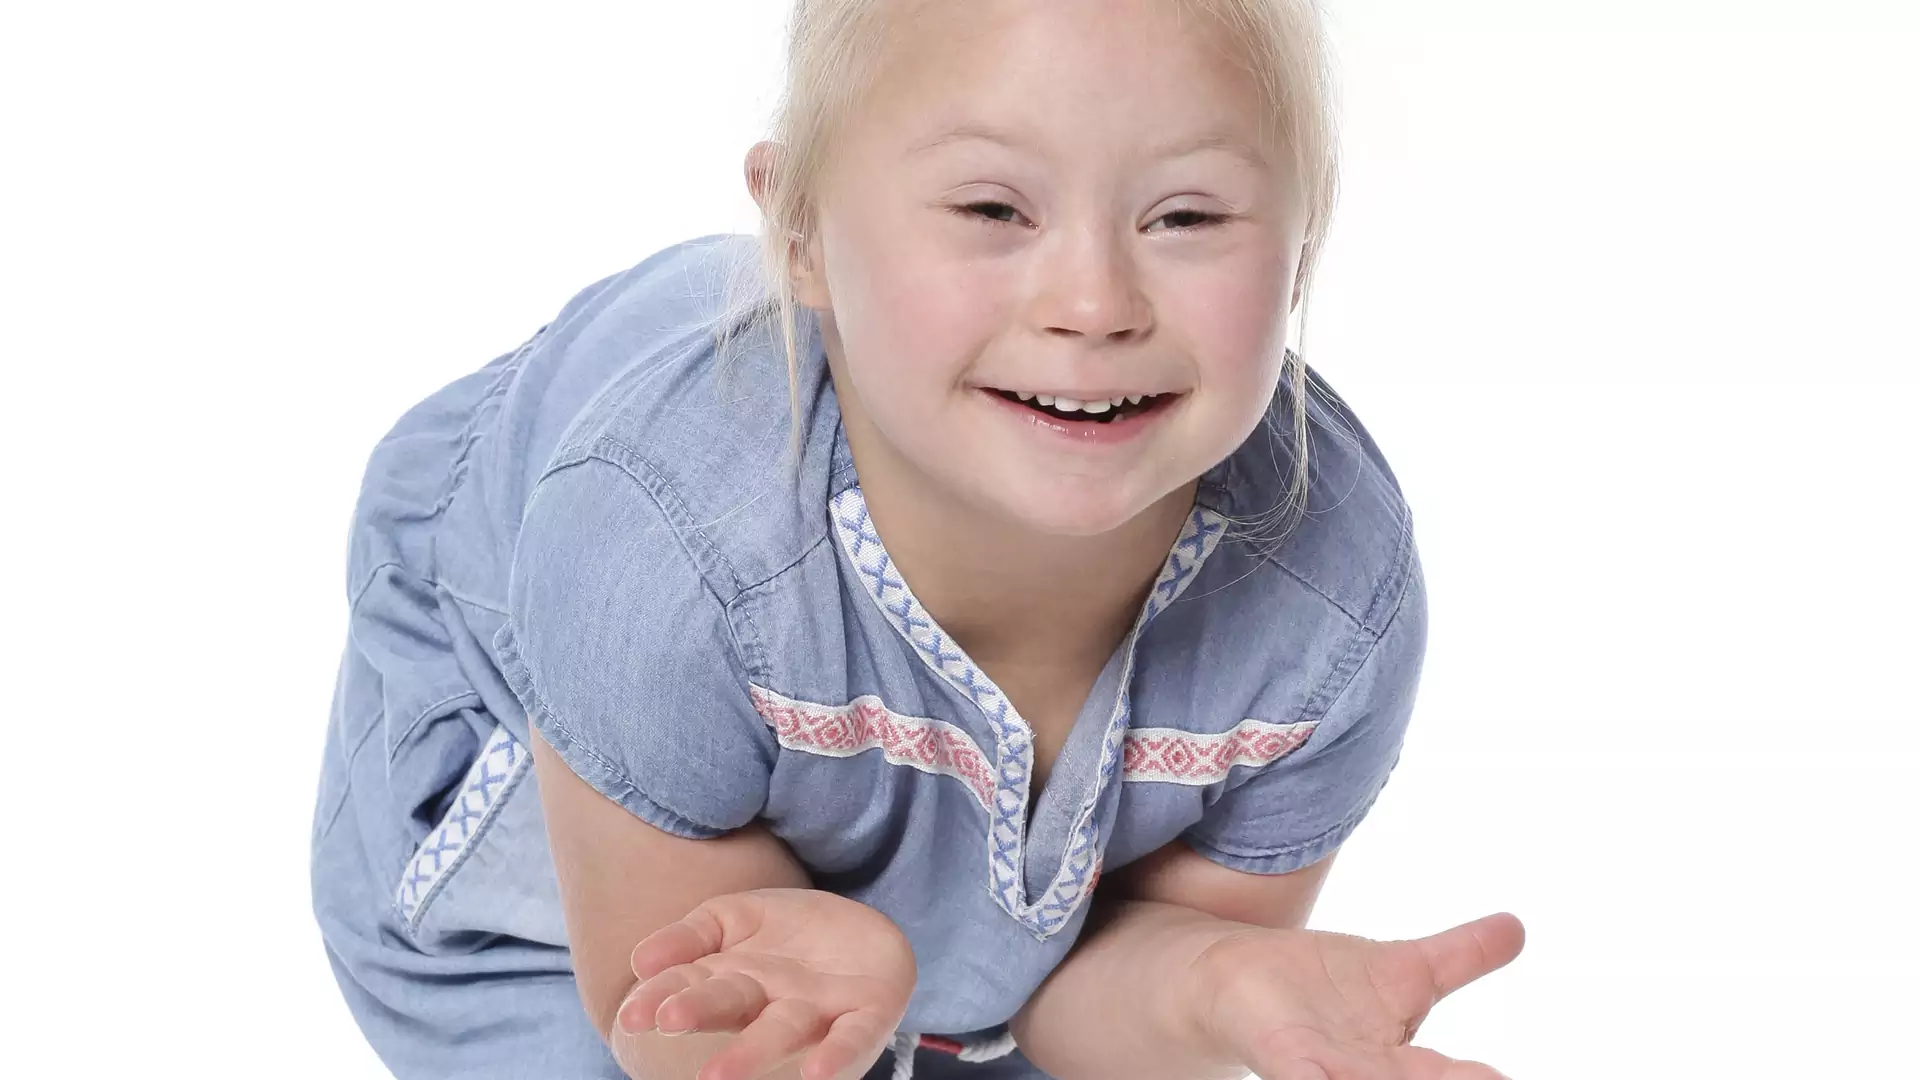 Poznajcie Lenkę - 4-letnią modelkę z Zespołem Downa